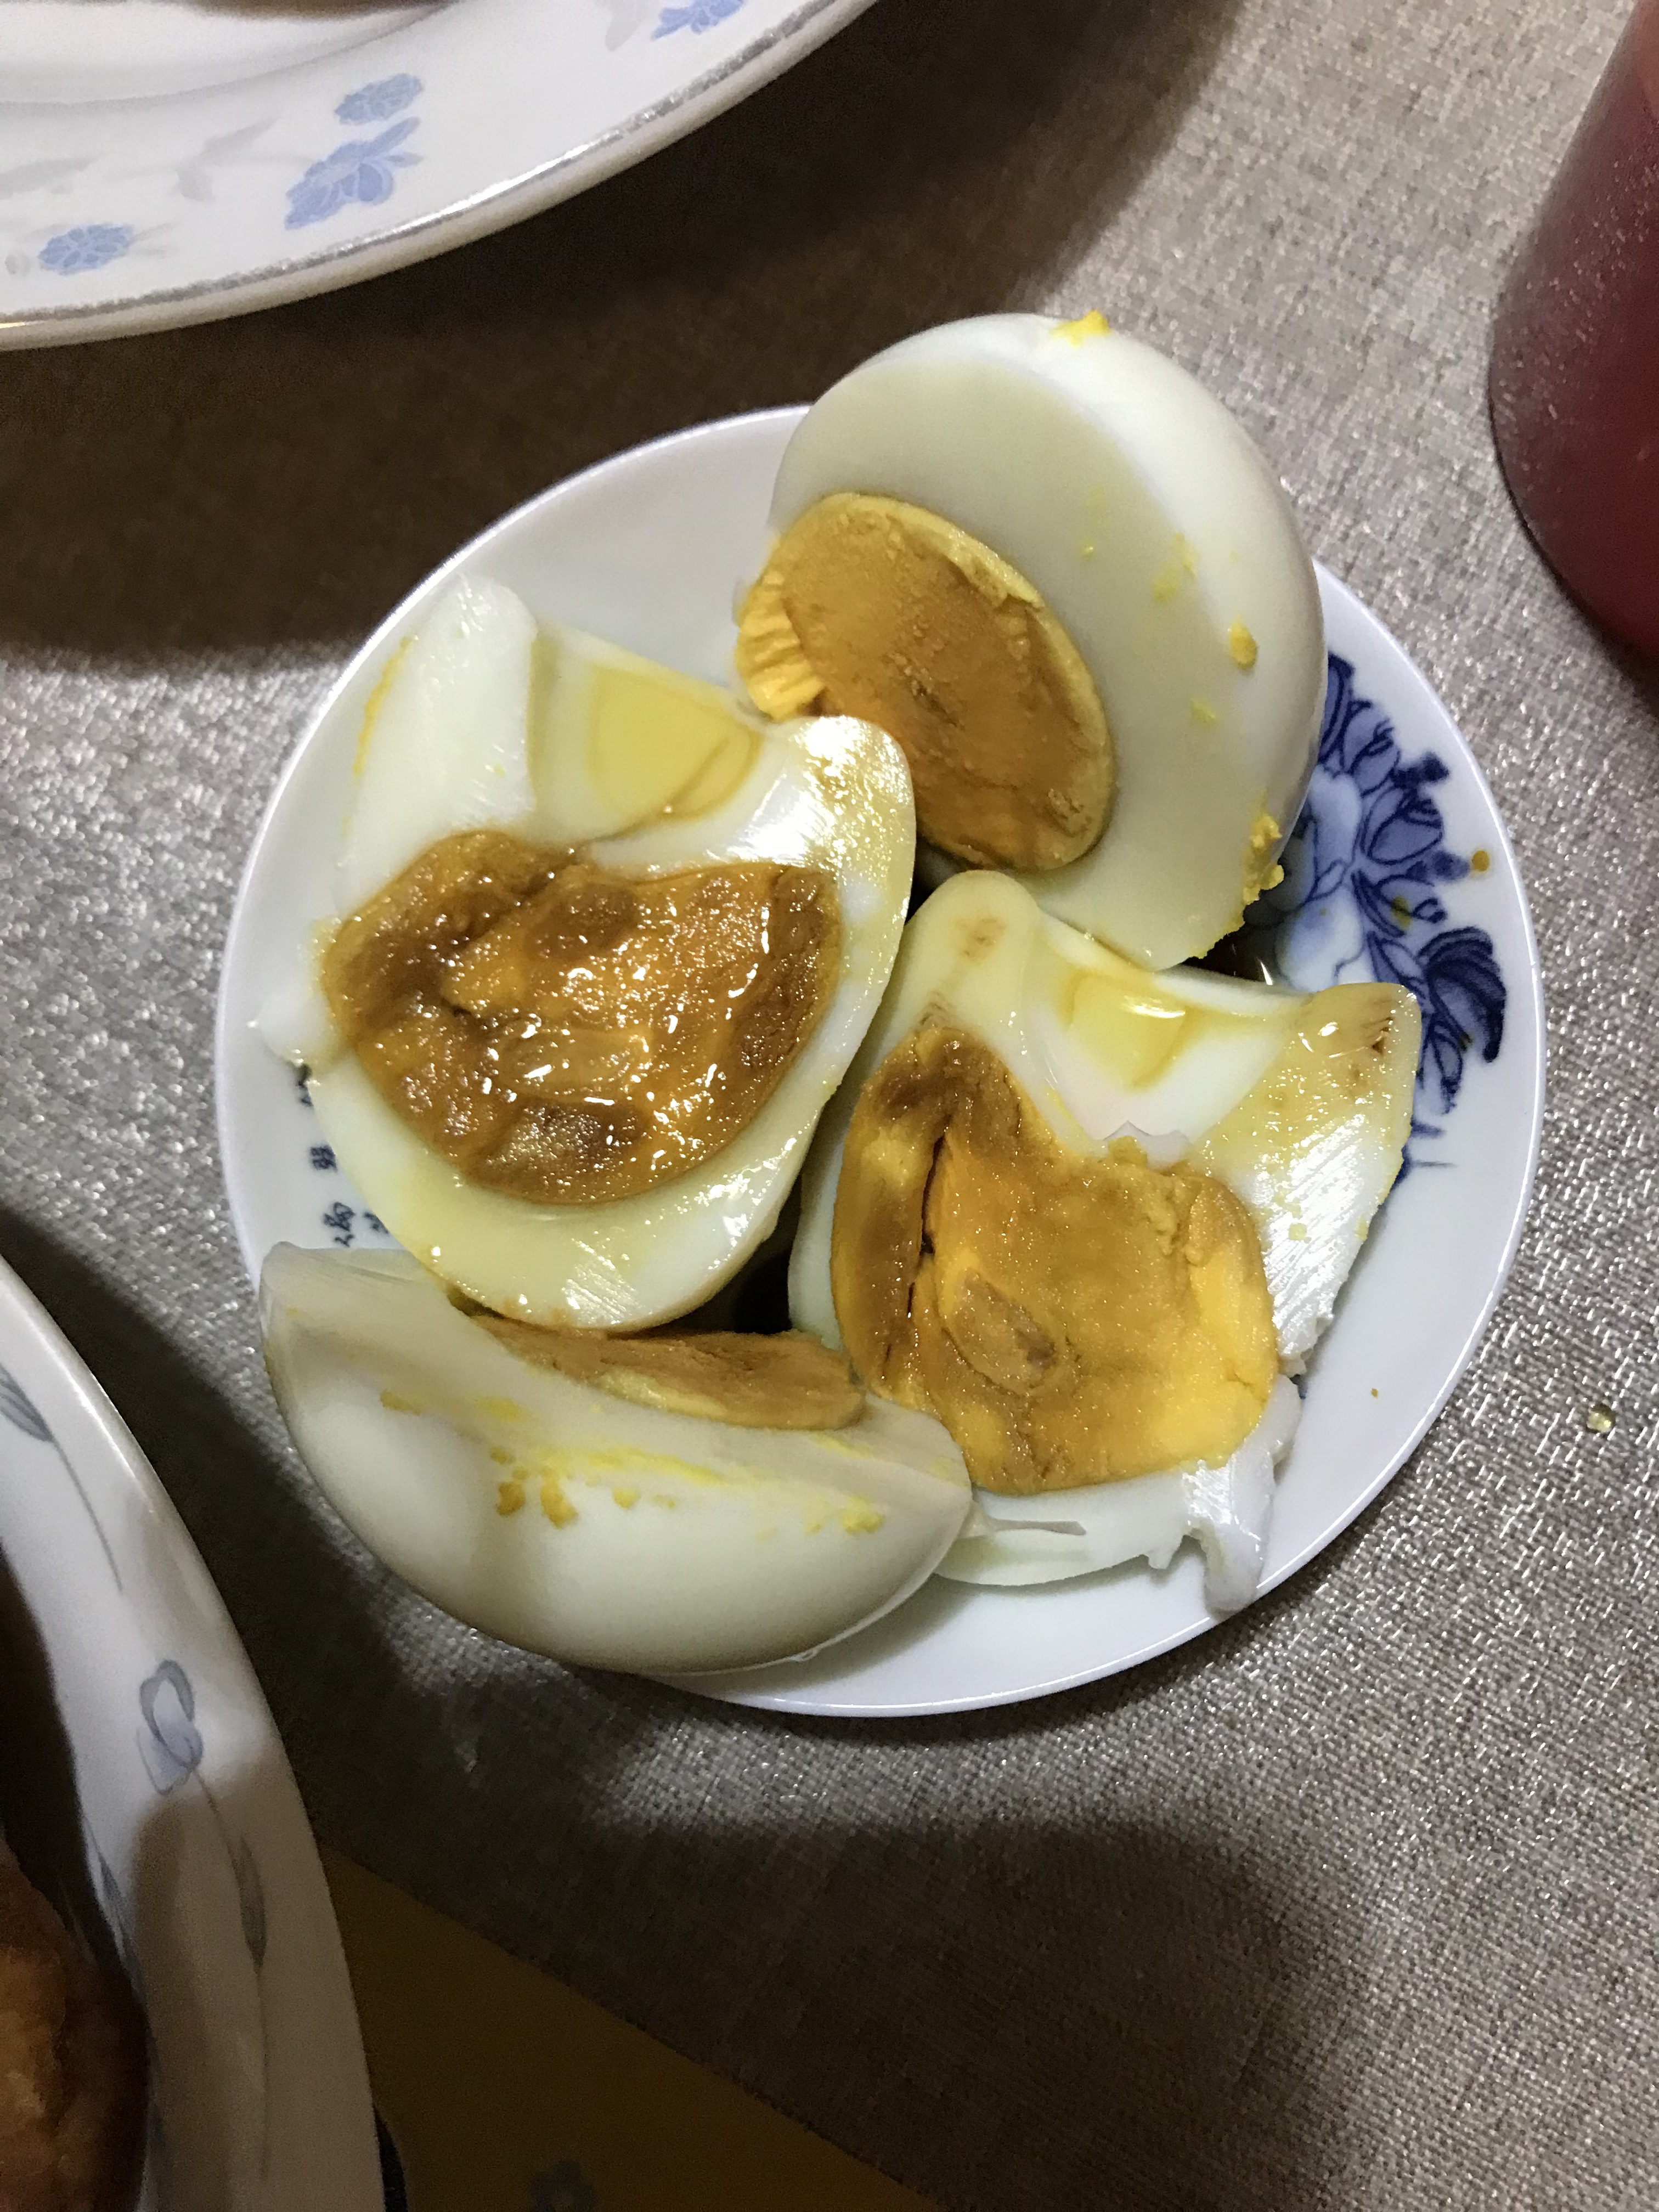 白水煮鸡蛋的做法